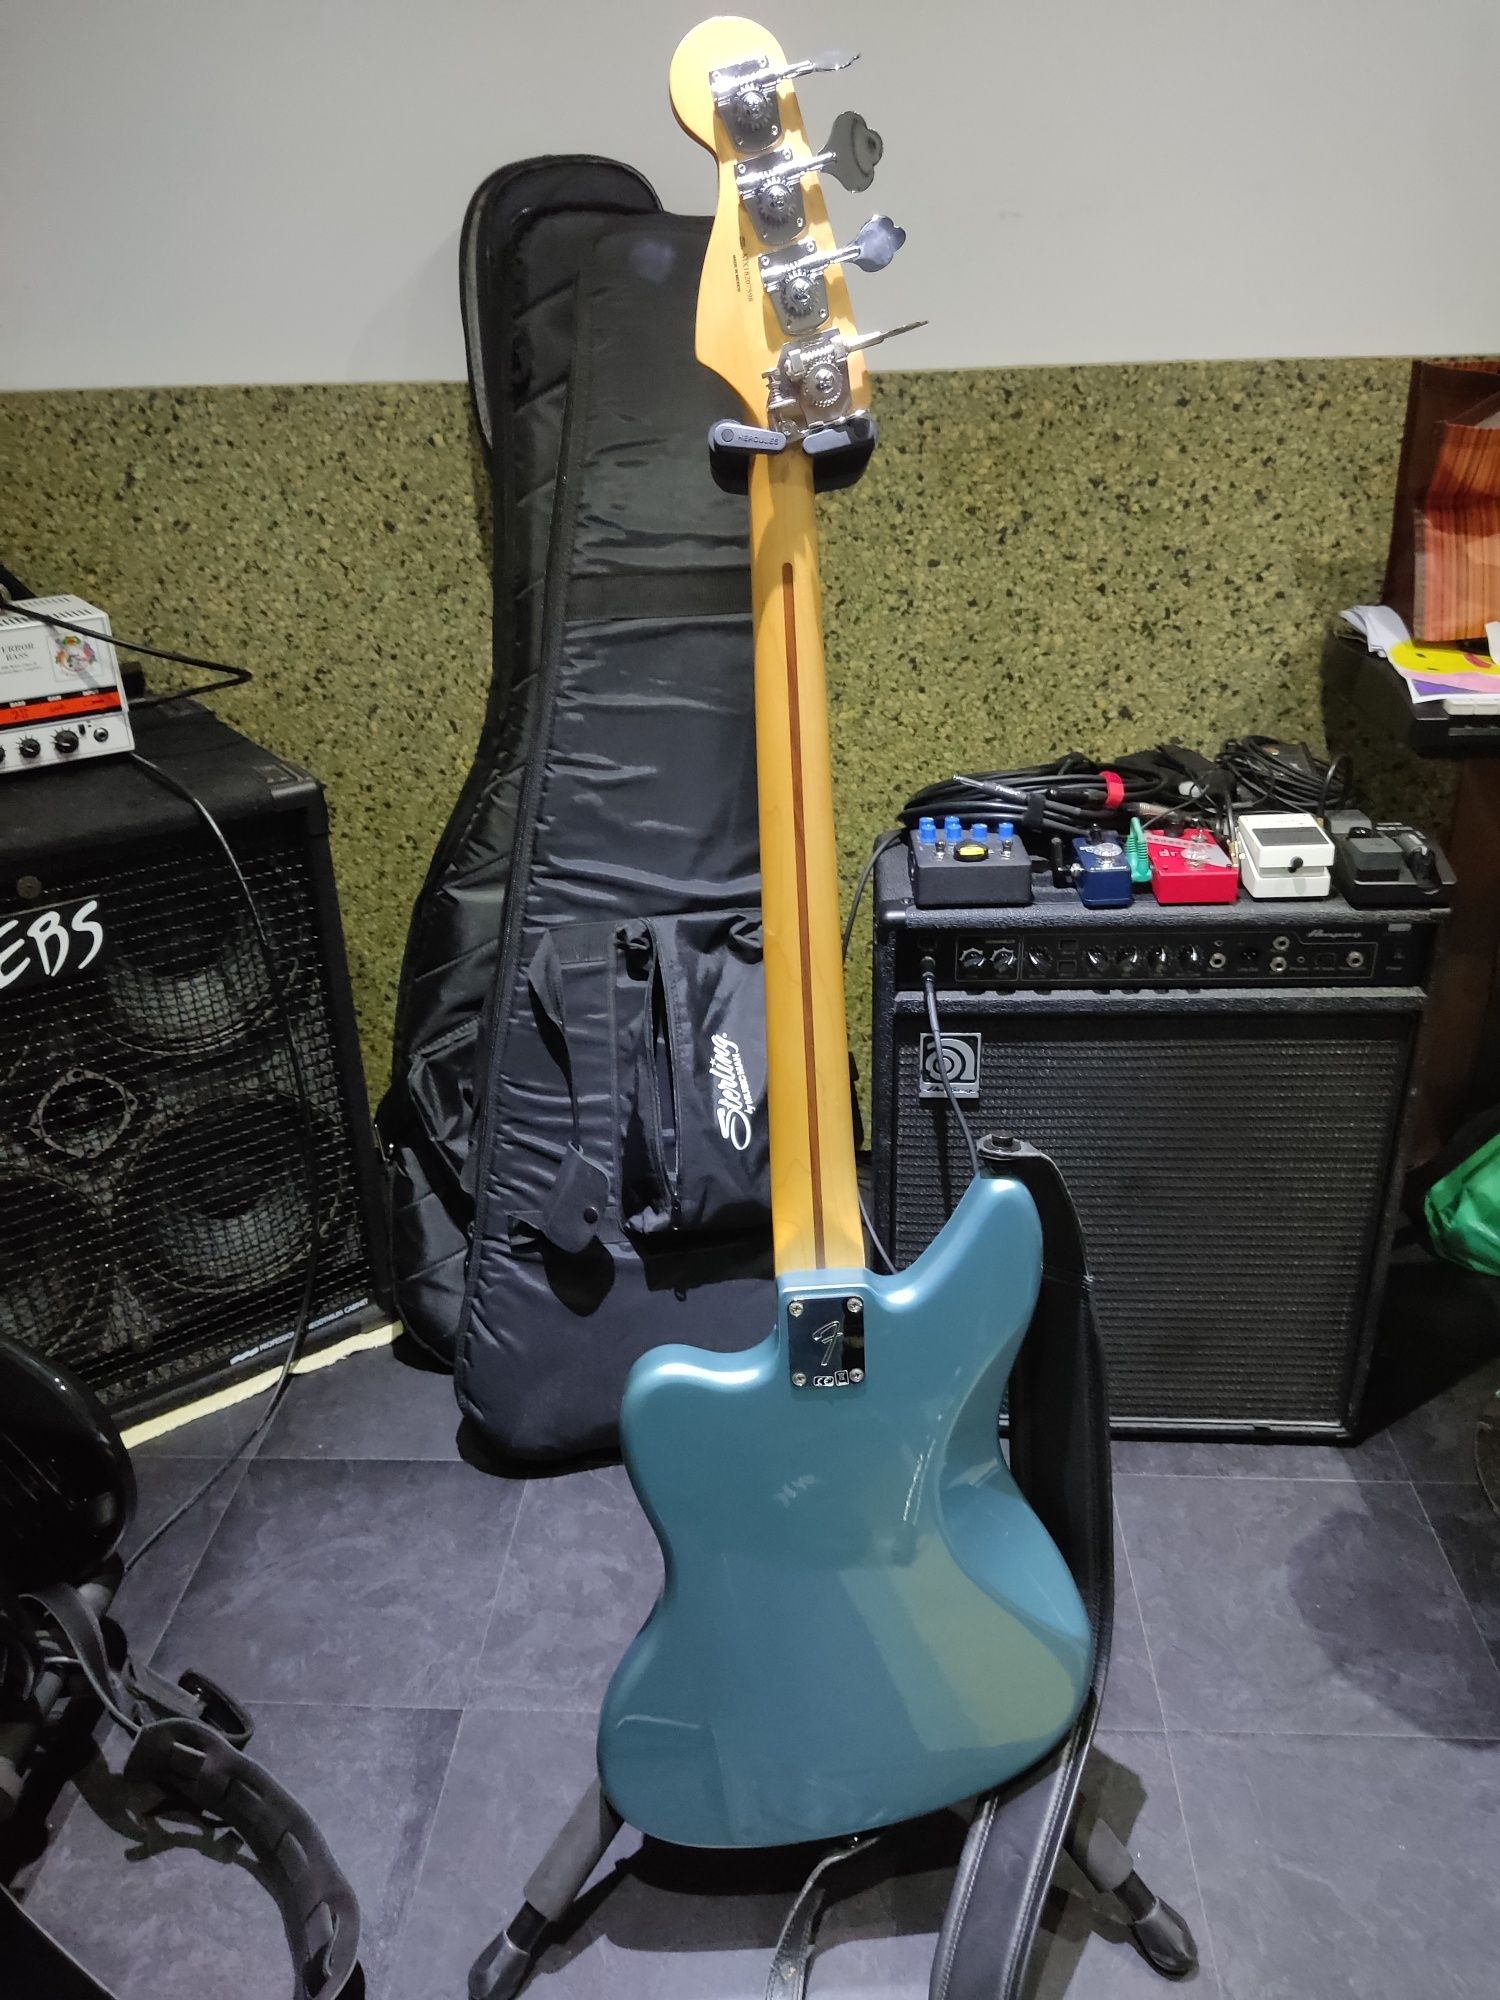 Fender Jaguar bass